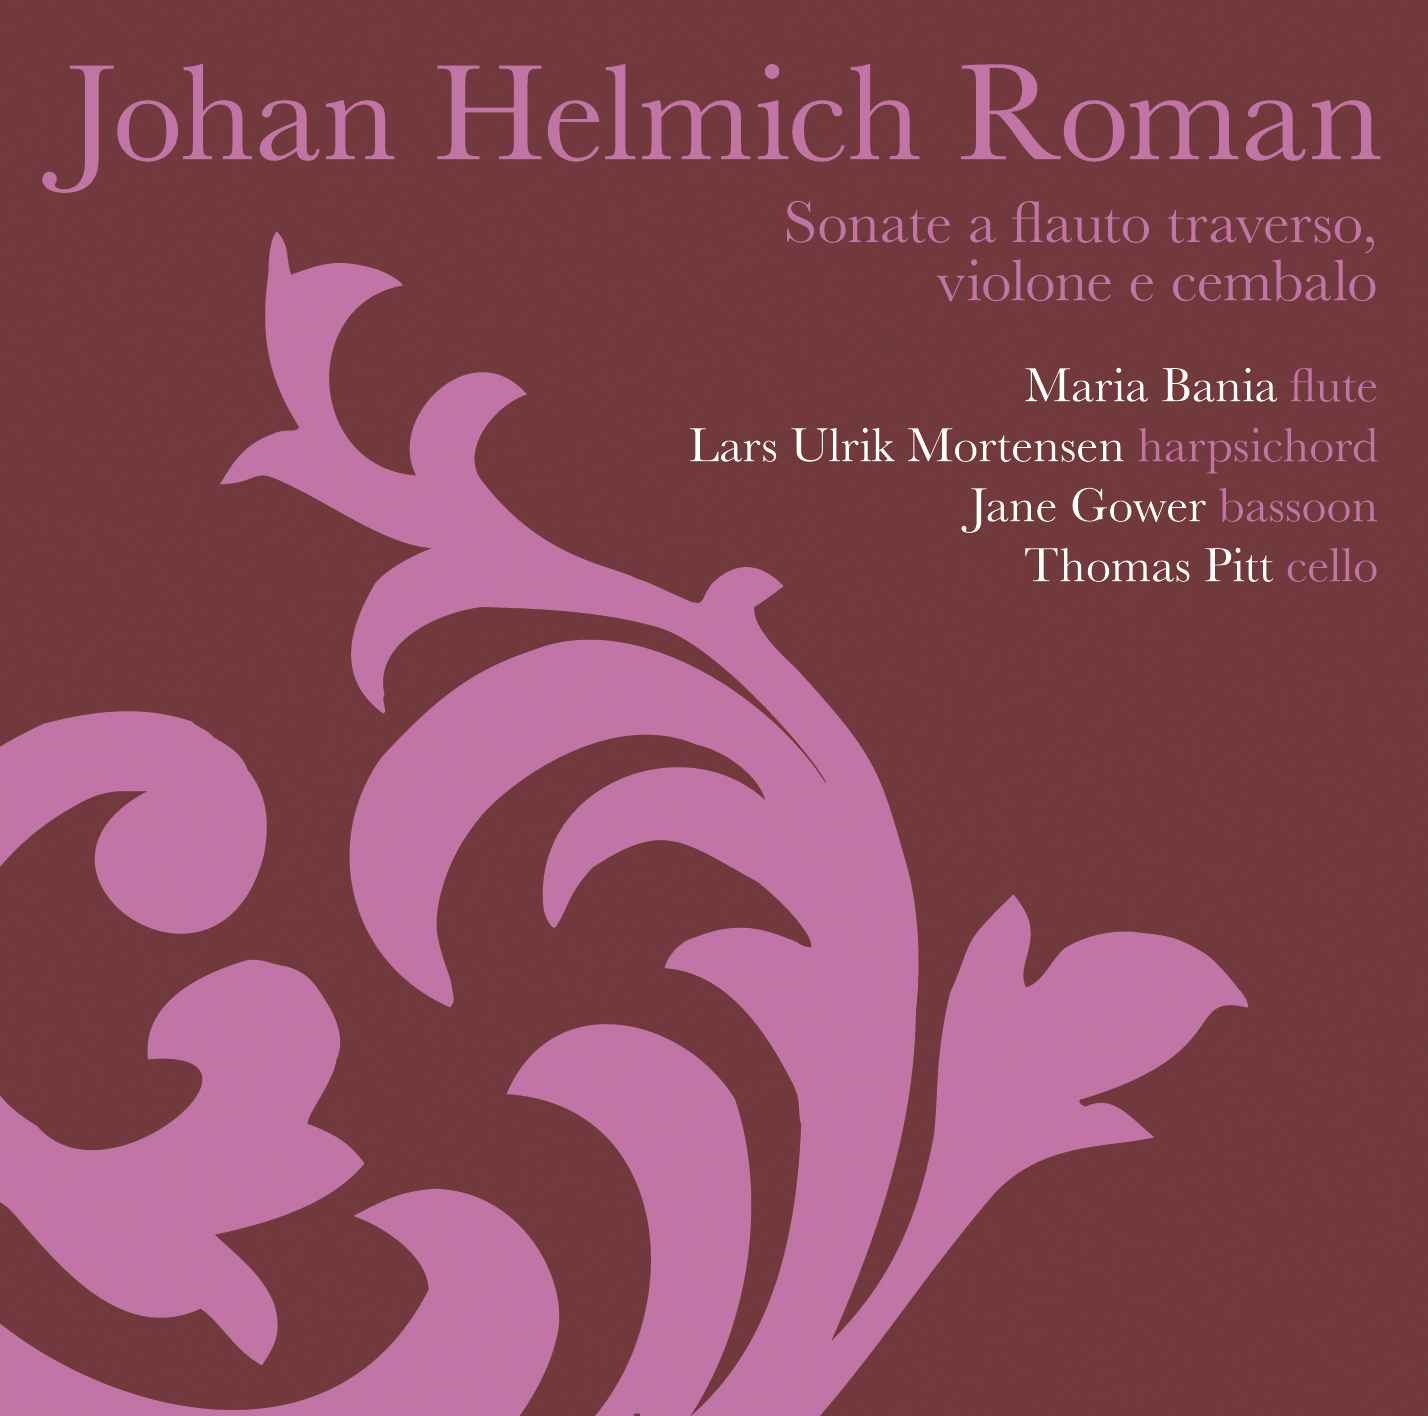 Johan Helmich Roman/Sonate a flauto traverso, violone e cembalo